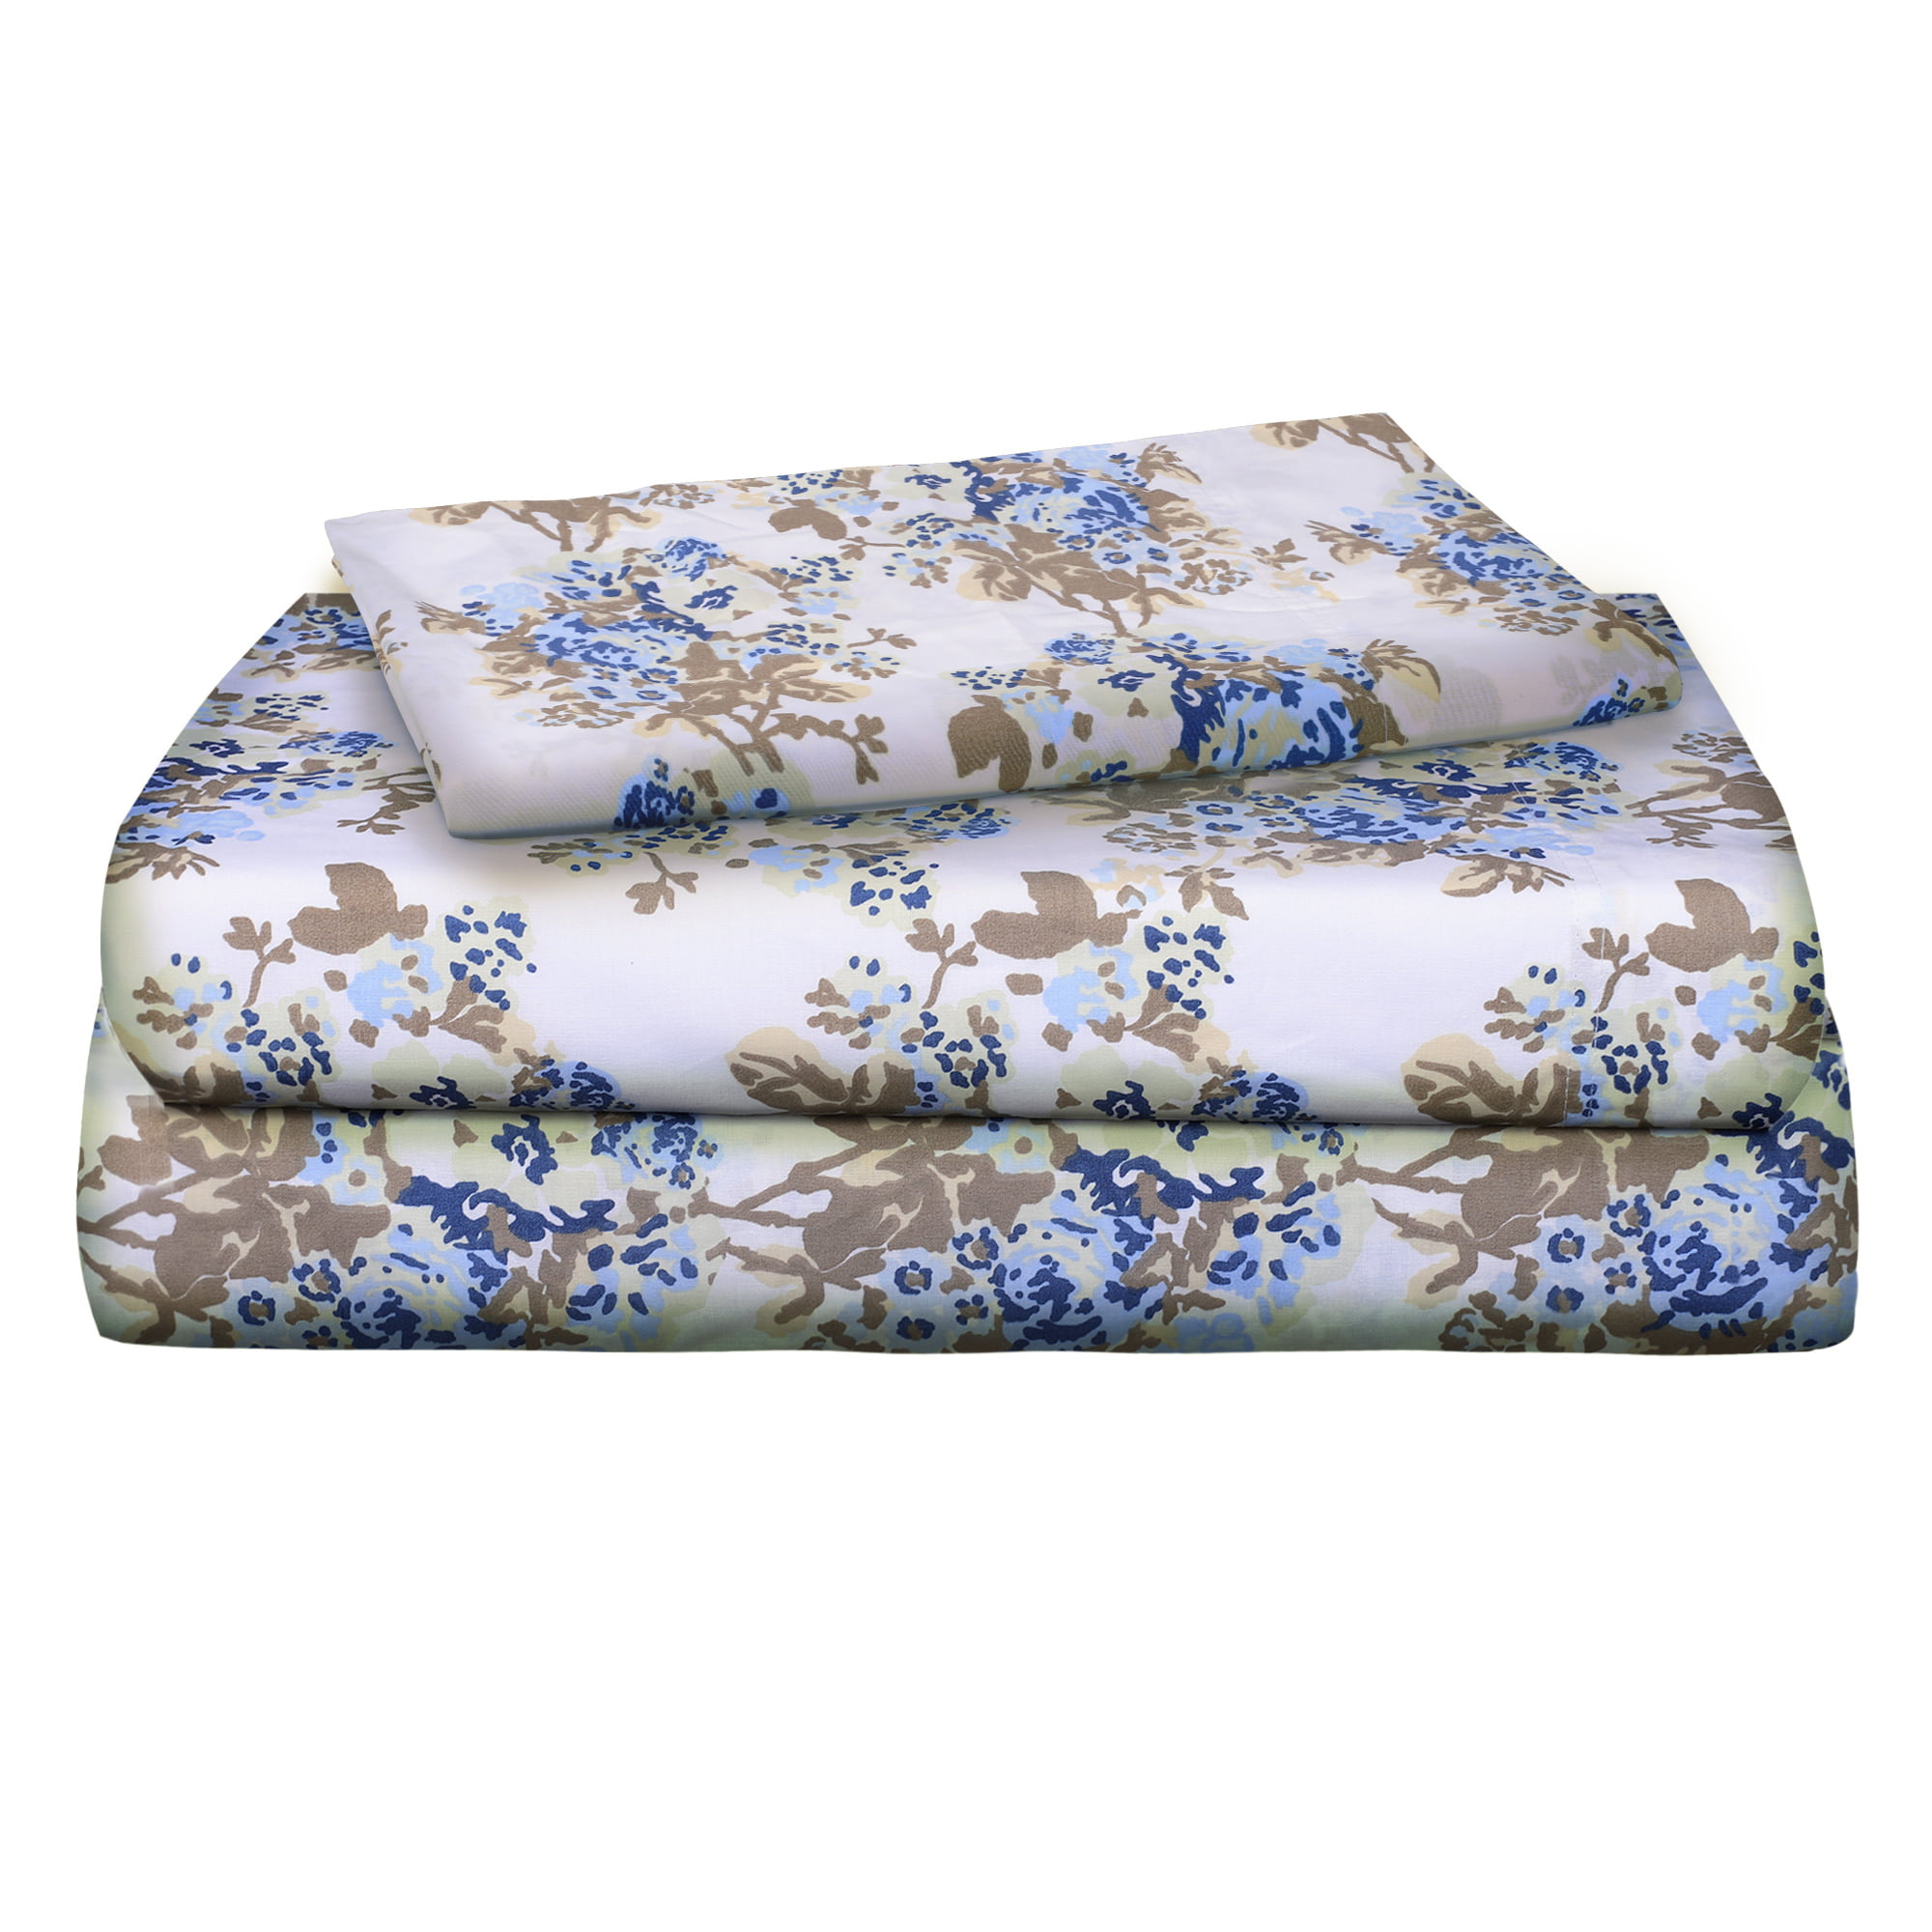 Cotton percale bedding